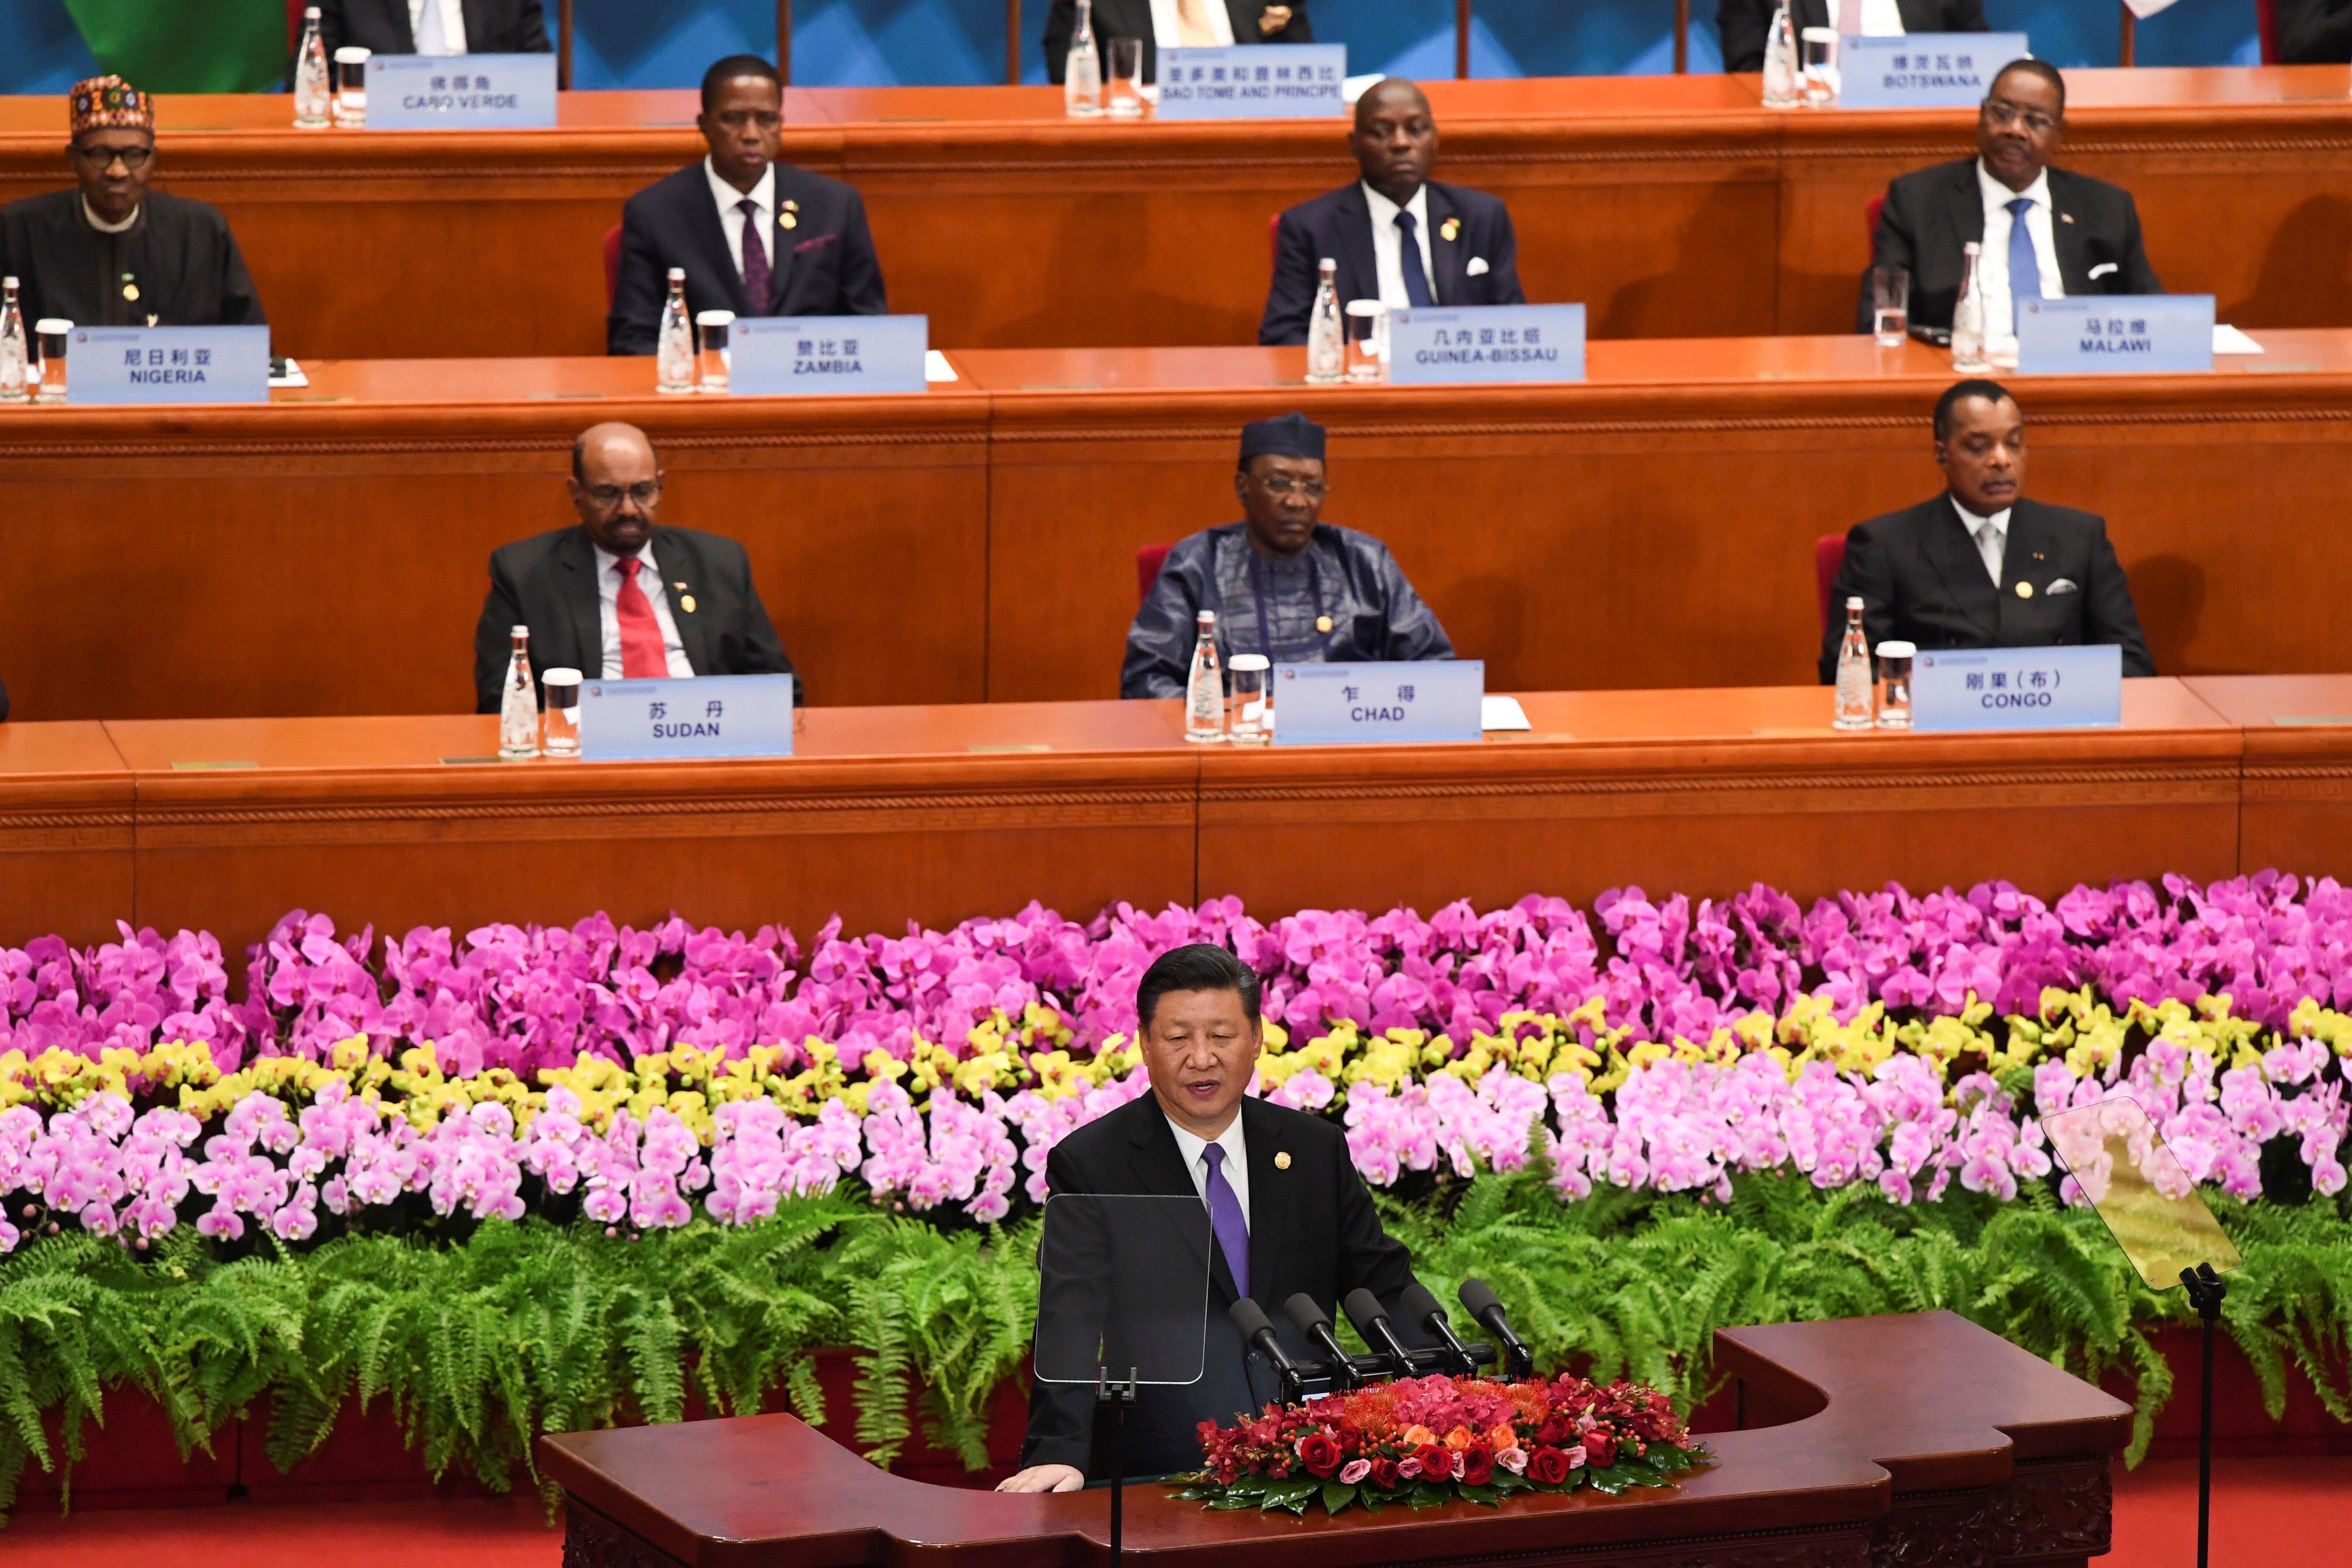 El presidente chino, Xi Jinping (c), ofrece un discurso durante la ceremonia de inauguración del Foro de Cooperación África-China (FOCAC) celebrado en Pekín (China) en septiembre de 2018. EFE/ Madoka Ikegami / Archivo
